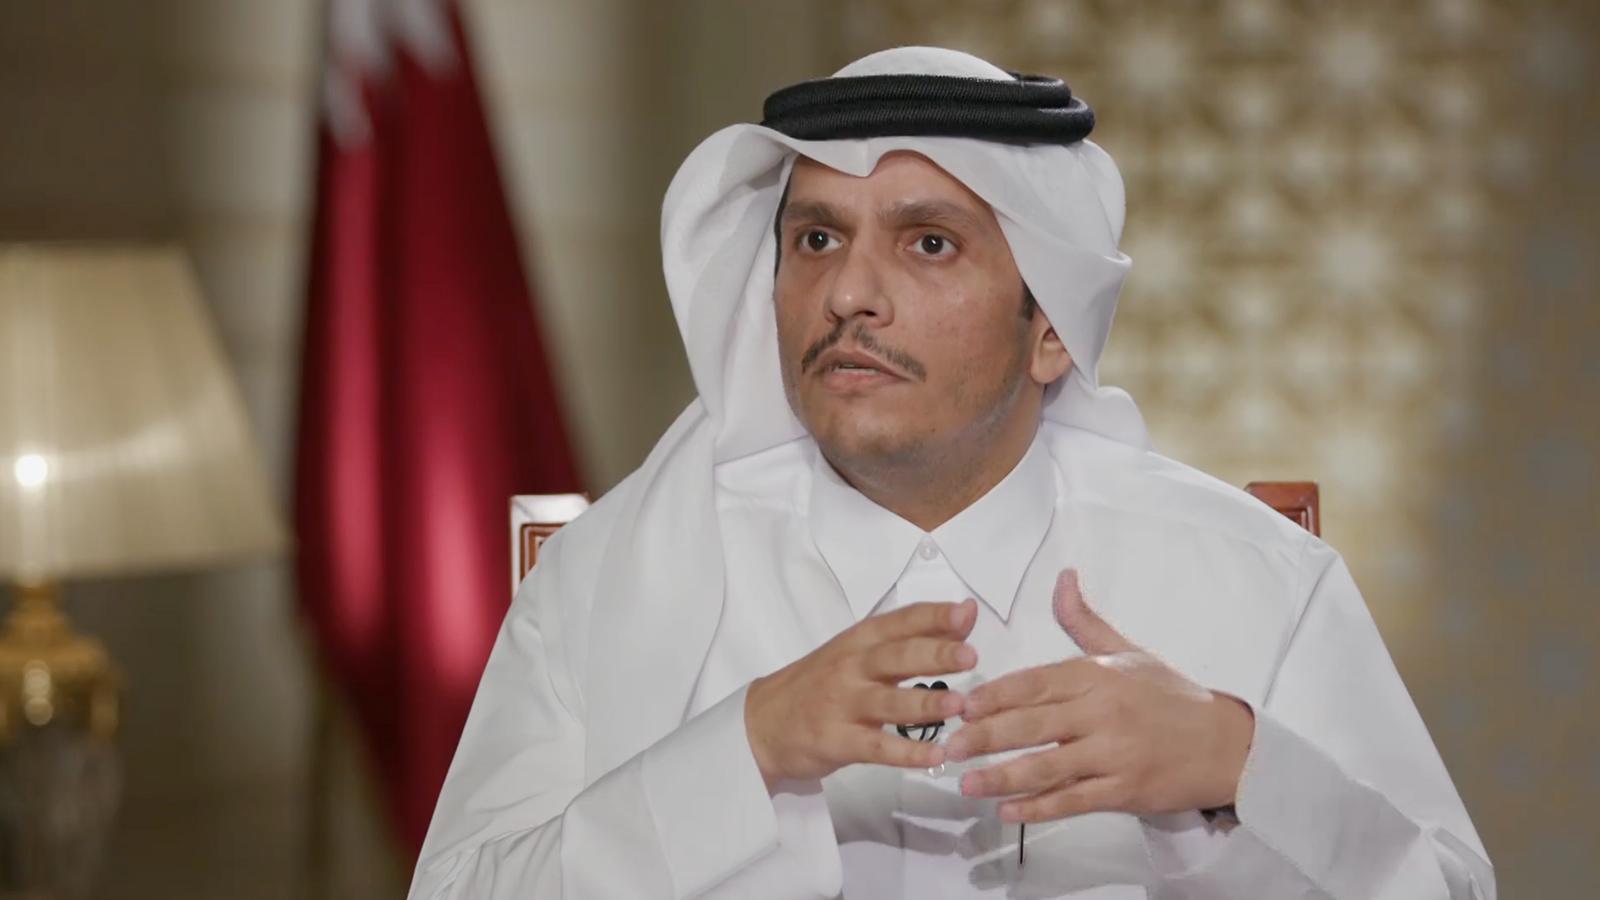 پشت پرده سفر محرمانه وزیر خارجه قطر به ریاض و آشتی عربی